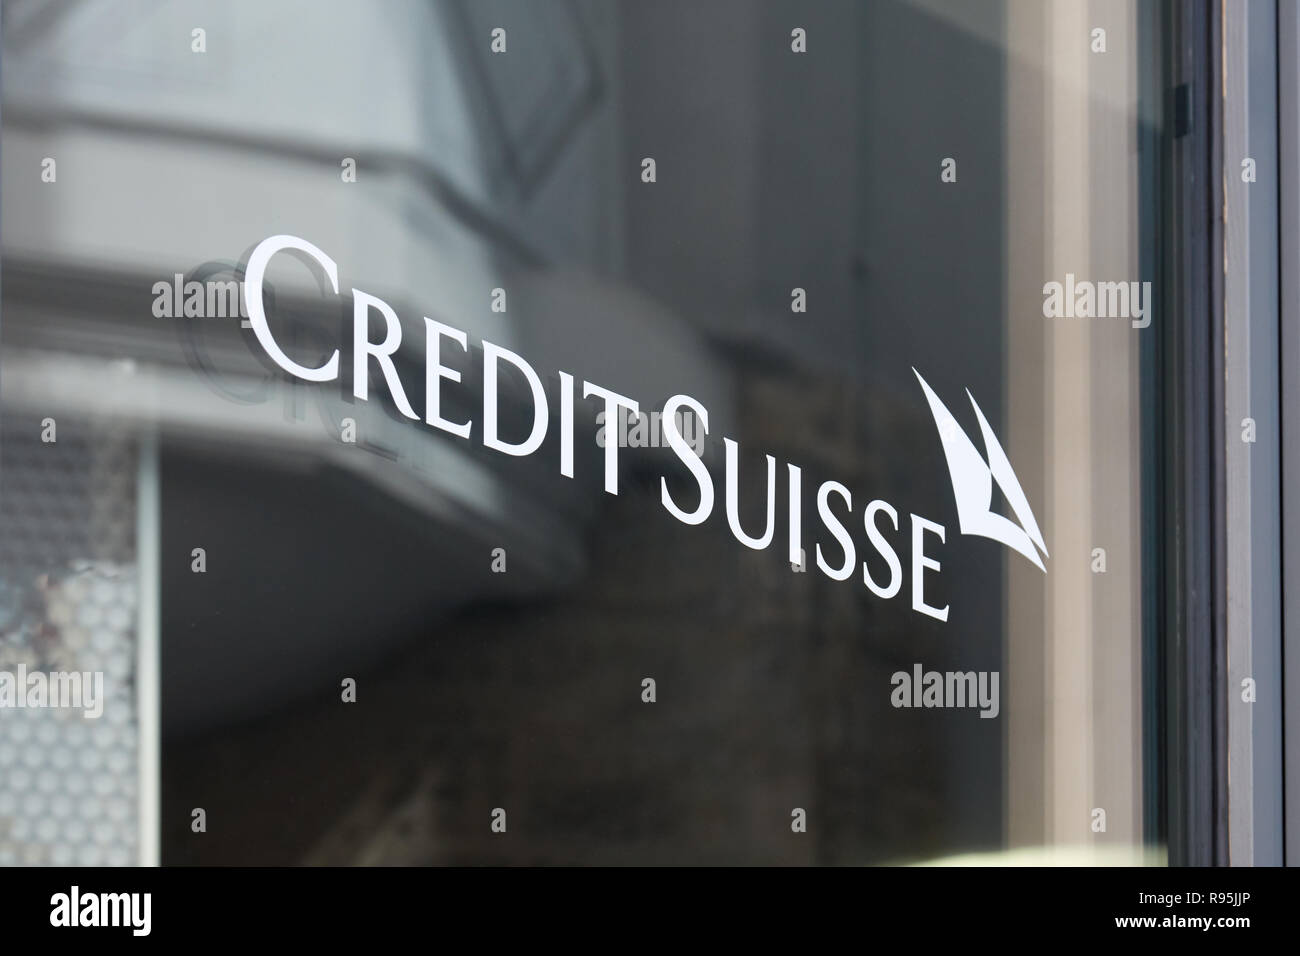 SANKT MORITZ, Suisse - le 16 août 2018 : Credit Suisse, Swiss bank signer sur la fenêtre à Sankt Moritz, Suisse Banque D'Images